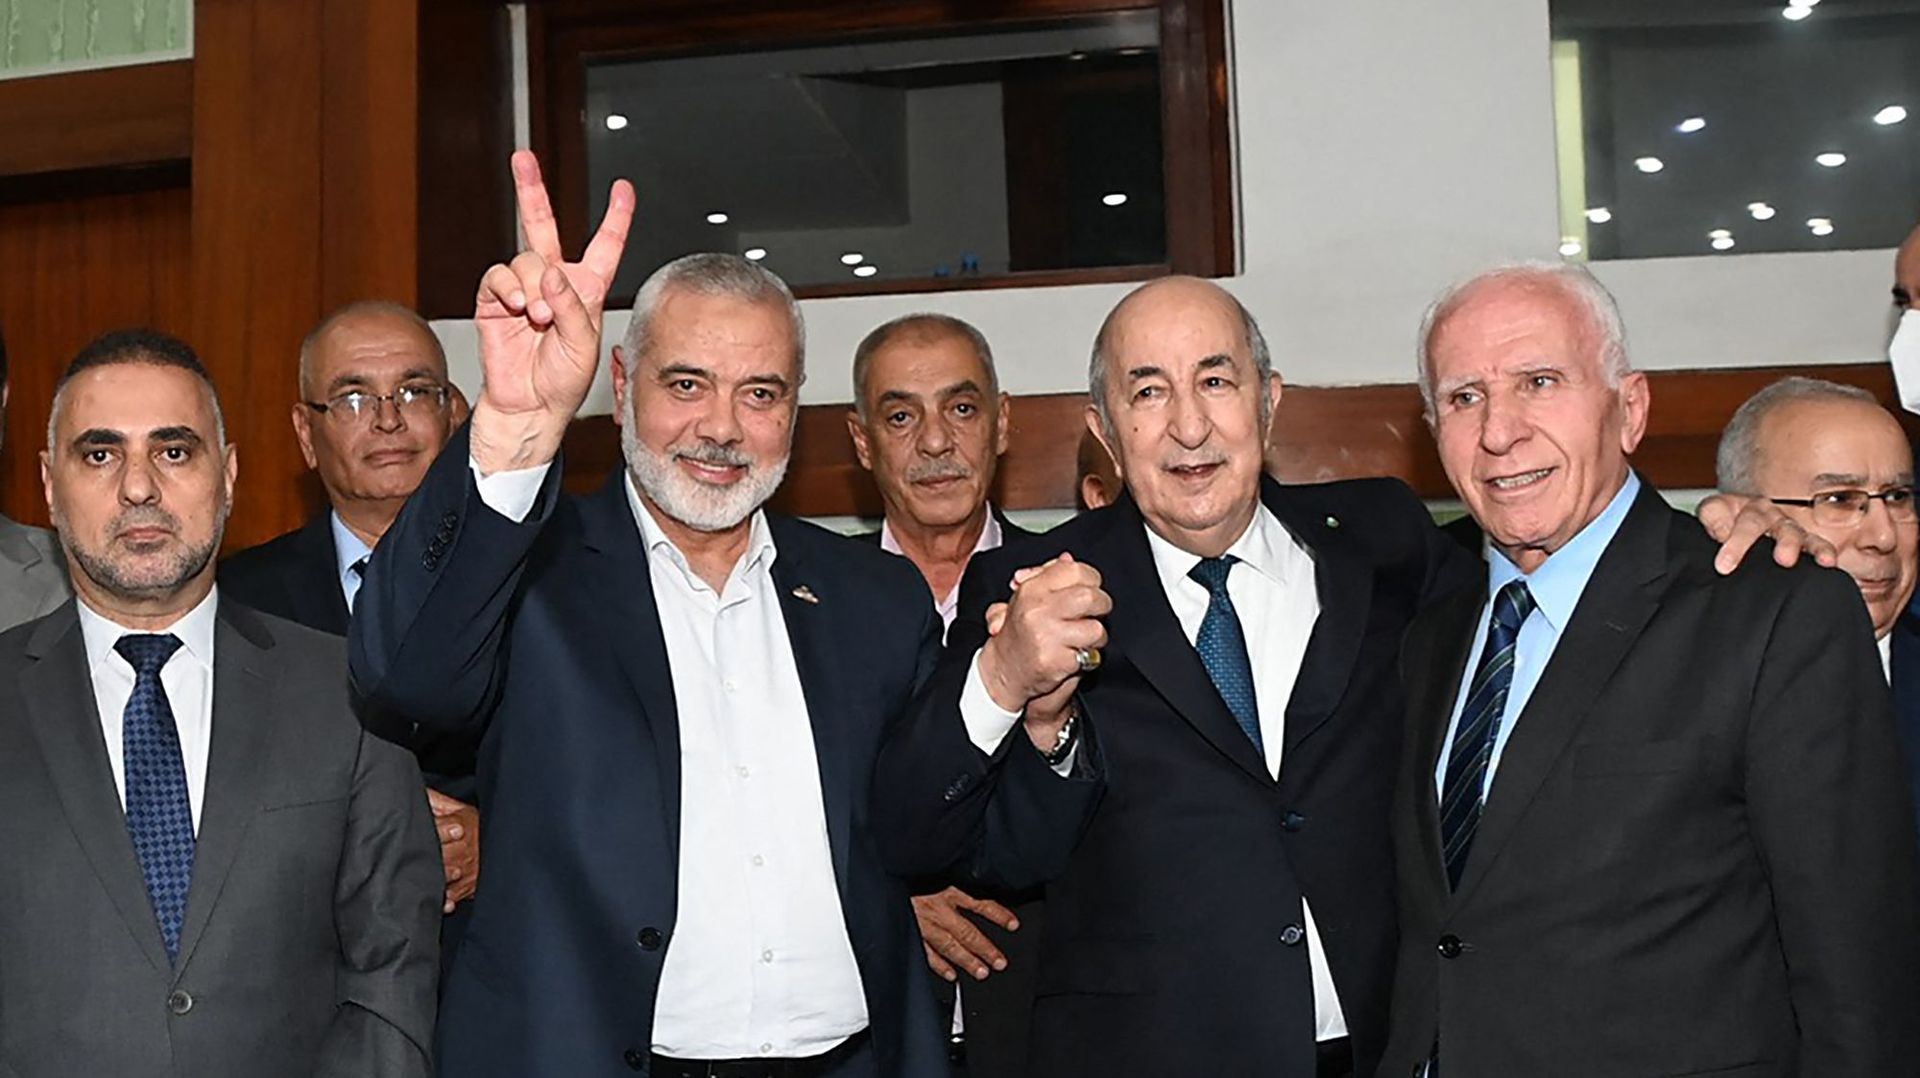 Une photo fournie par la page Facebook officielle de la présidence algérienne le 12 octobre 2022 montre le président algérien Abdelmadjid Tebboune (au centre) posant pour une photo avec le chef du mouvement palestinien Hamas Ismail Haniyeh et le membre du